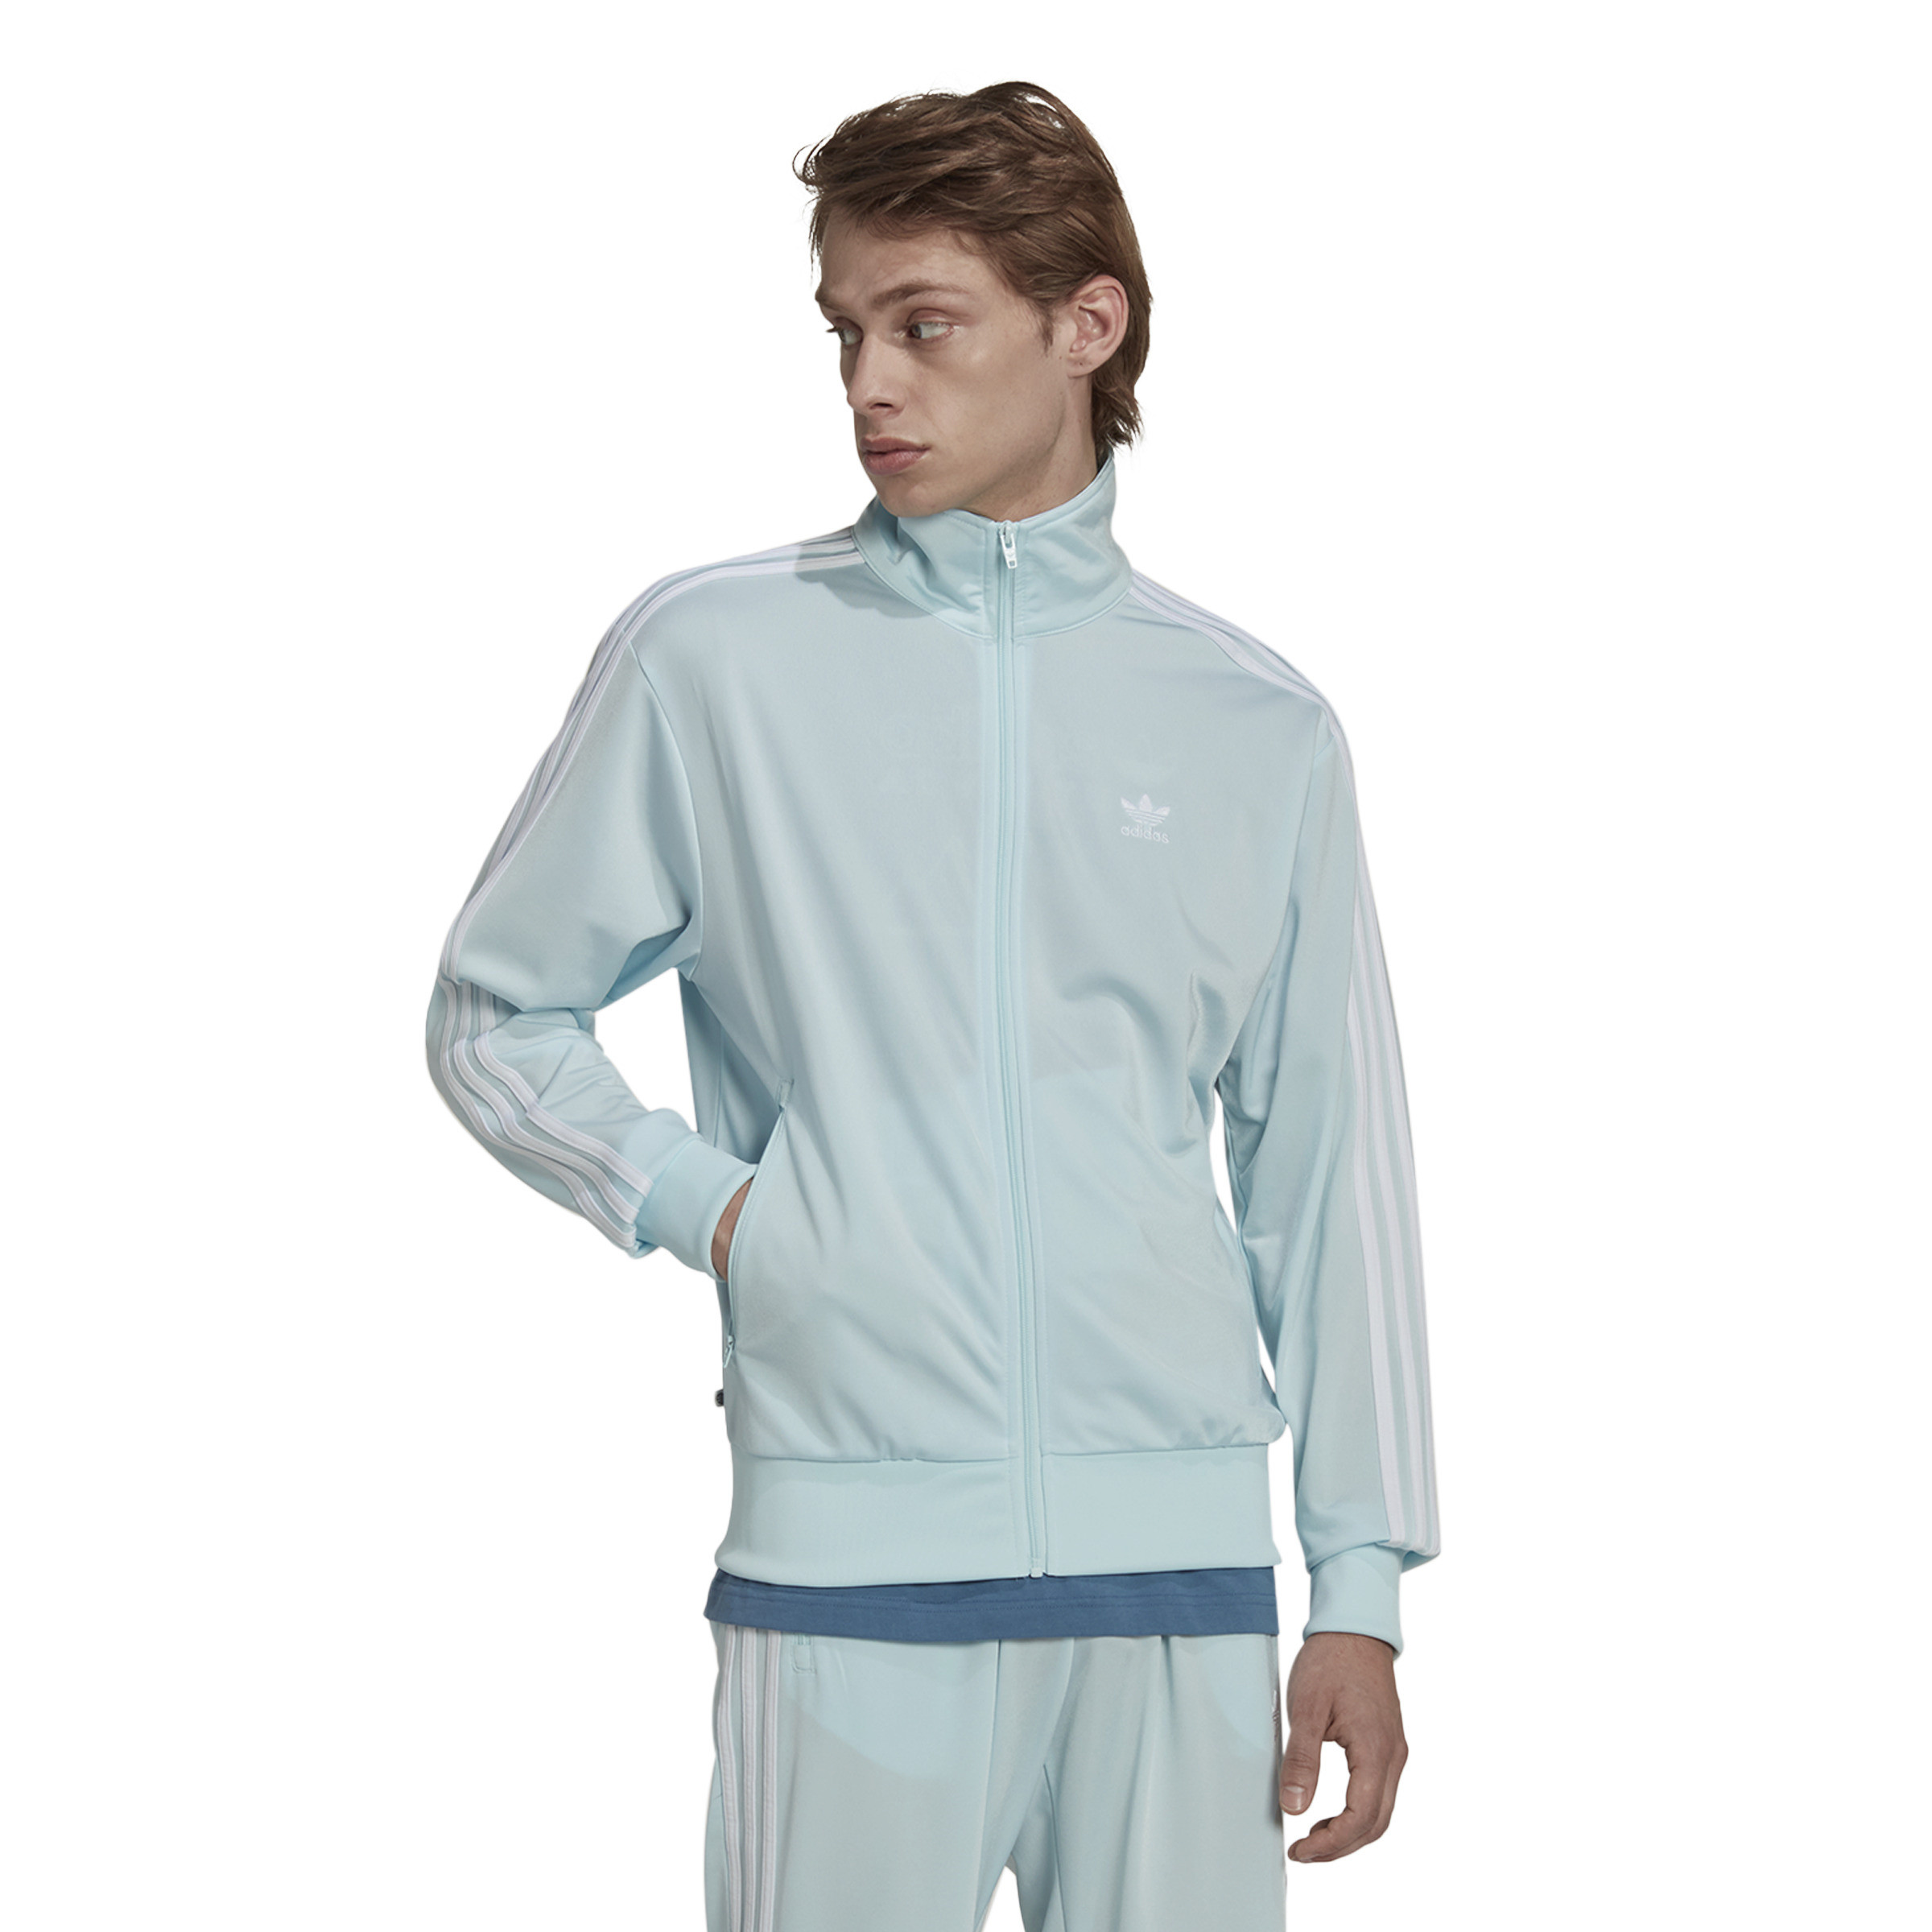 Adidas - Felpa con logo, Azzurro, large image number 1